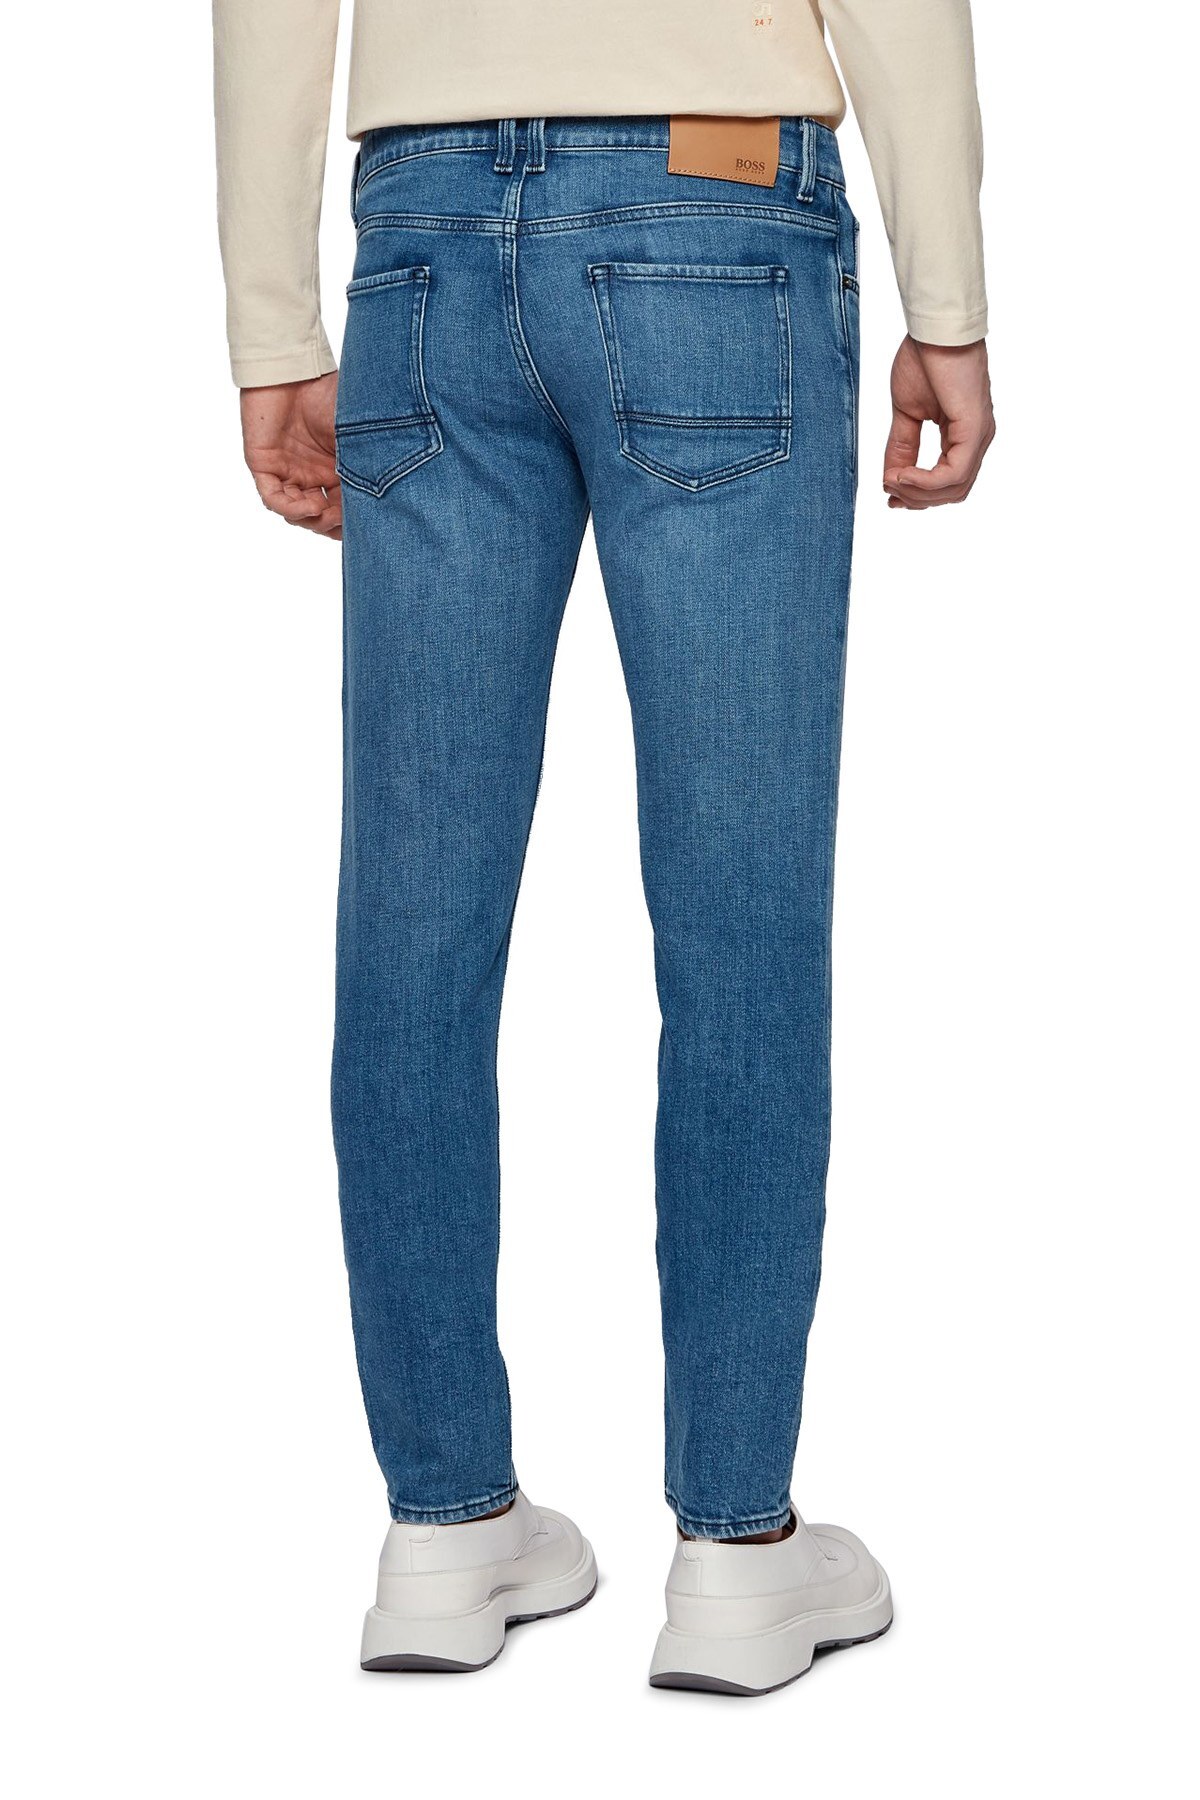 Hugo Boss Pamuklu Extra Slim Fit Jeans Erkek Kot Pantolon 50449628 433 LACİVERT